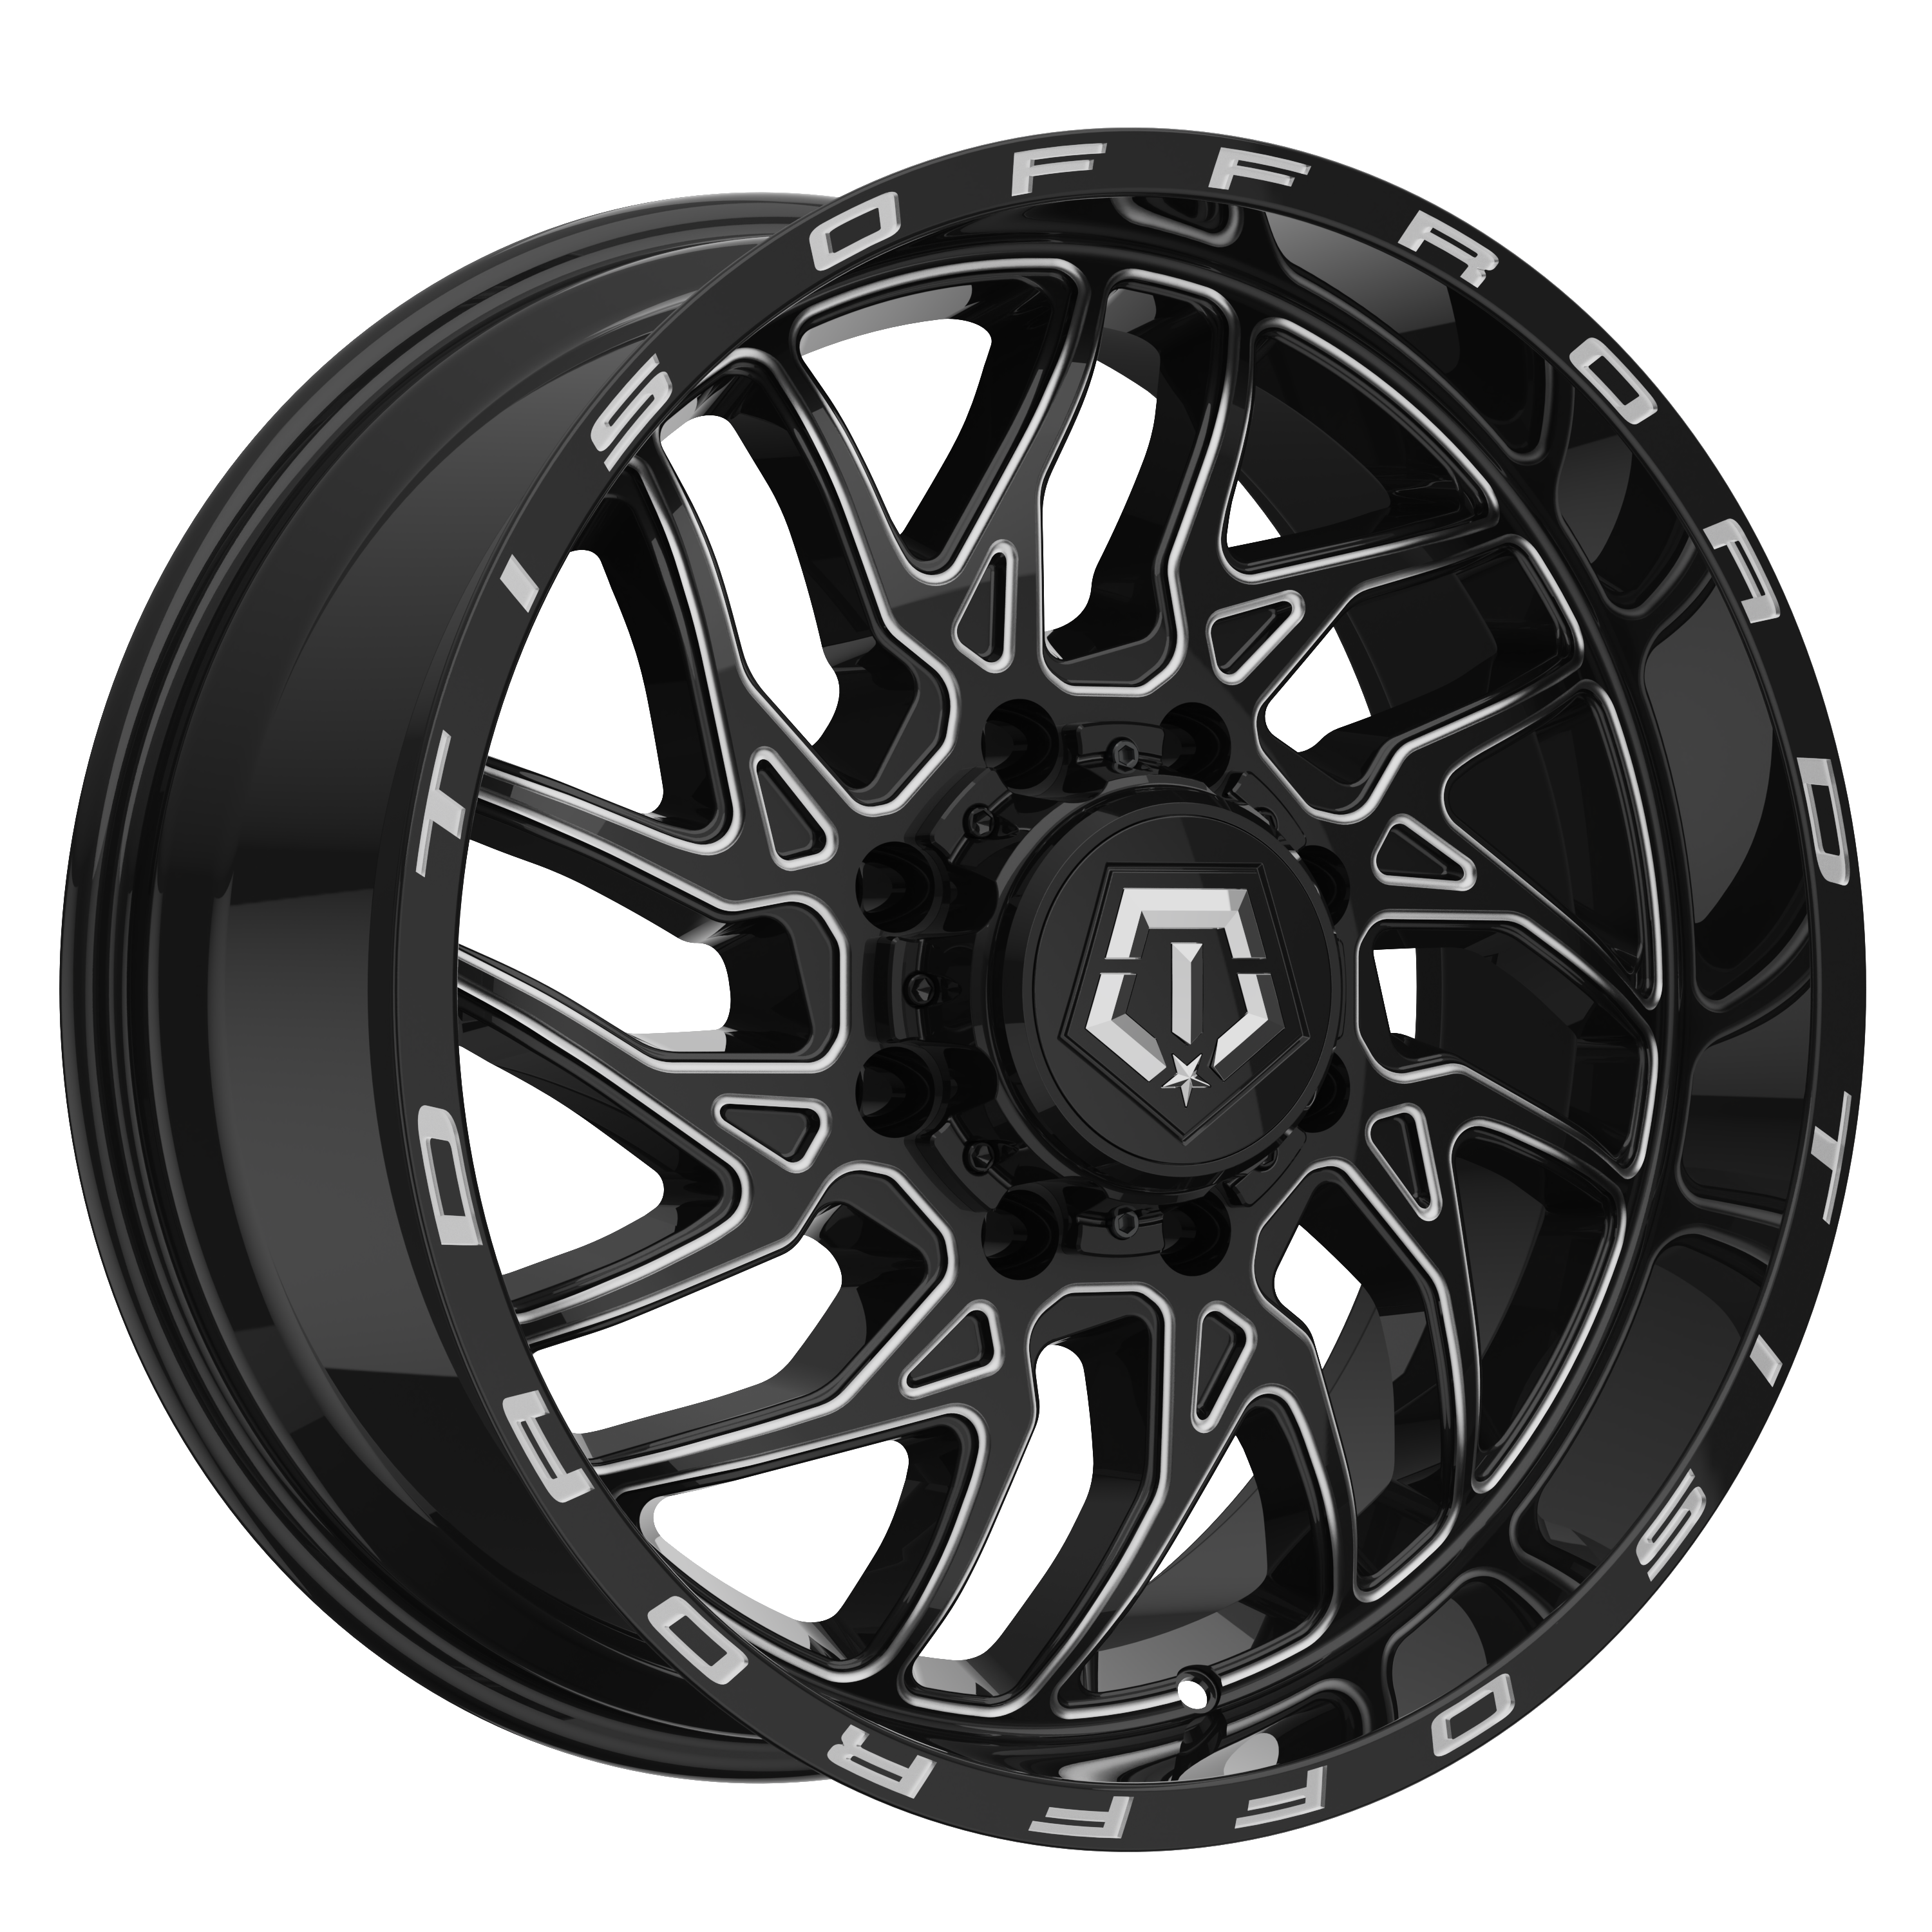 TIS 544 Black Milled 8-LUG Wheel for Sale 